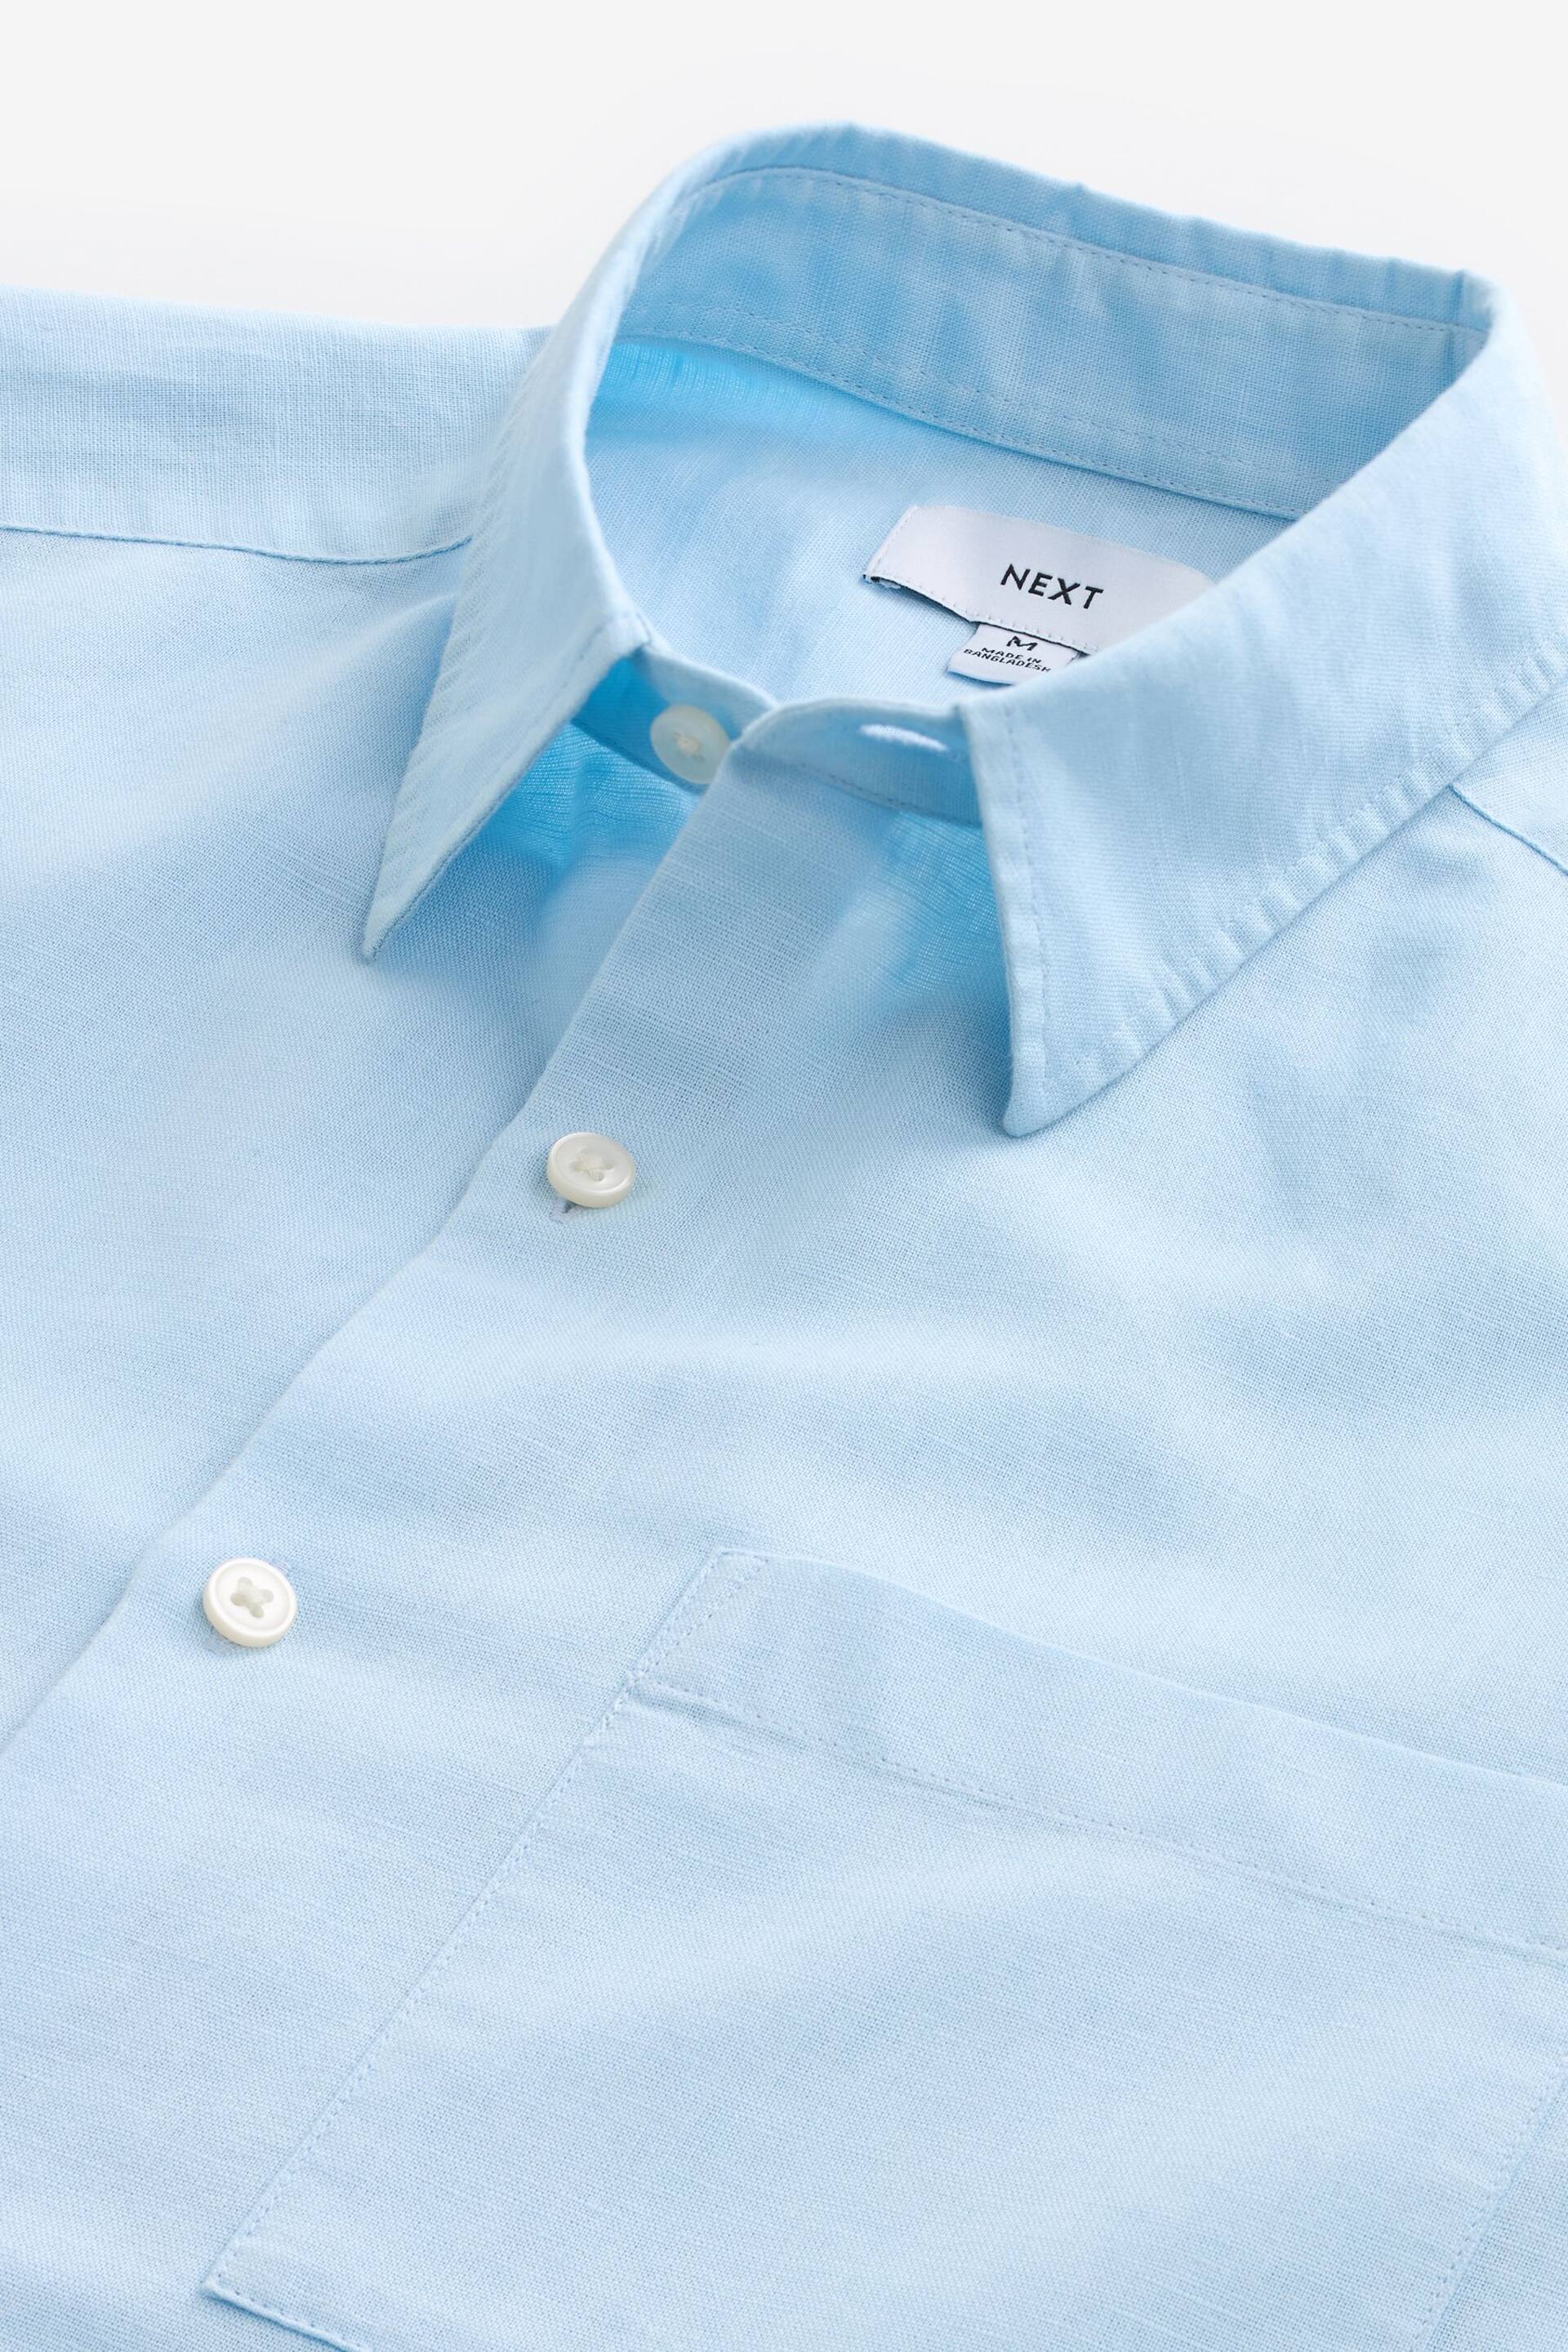 Light Blue Linen Blend Long Sleeve Shirt - Image 8 of 8